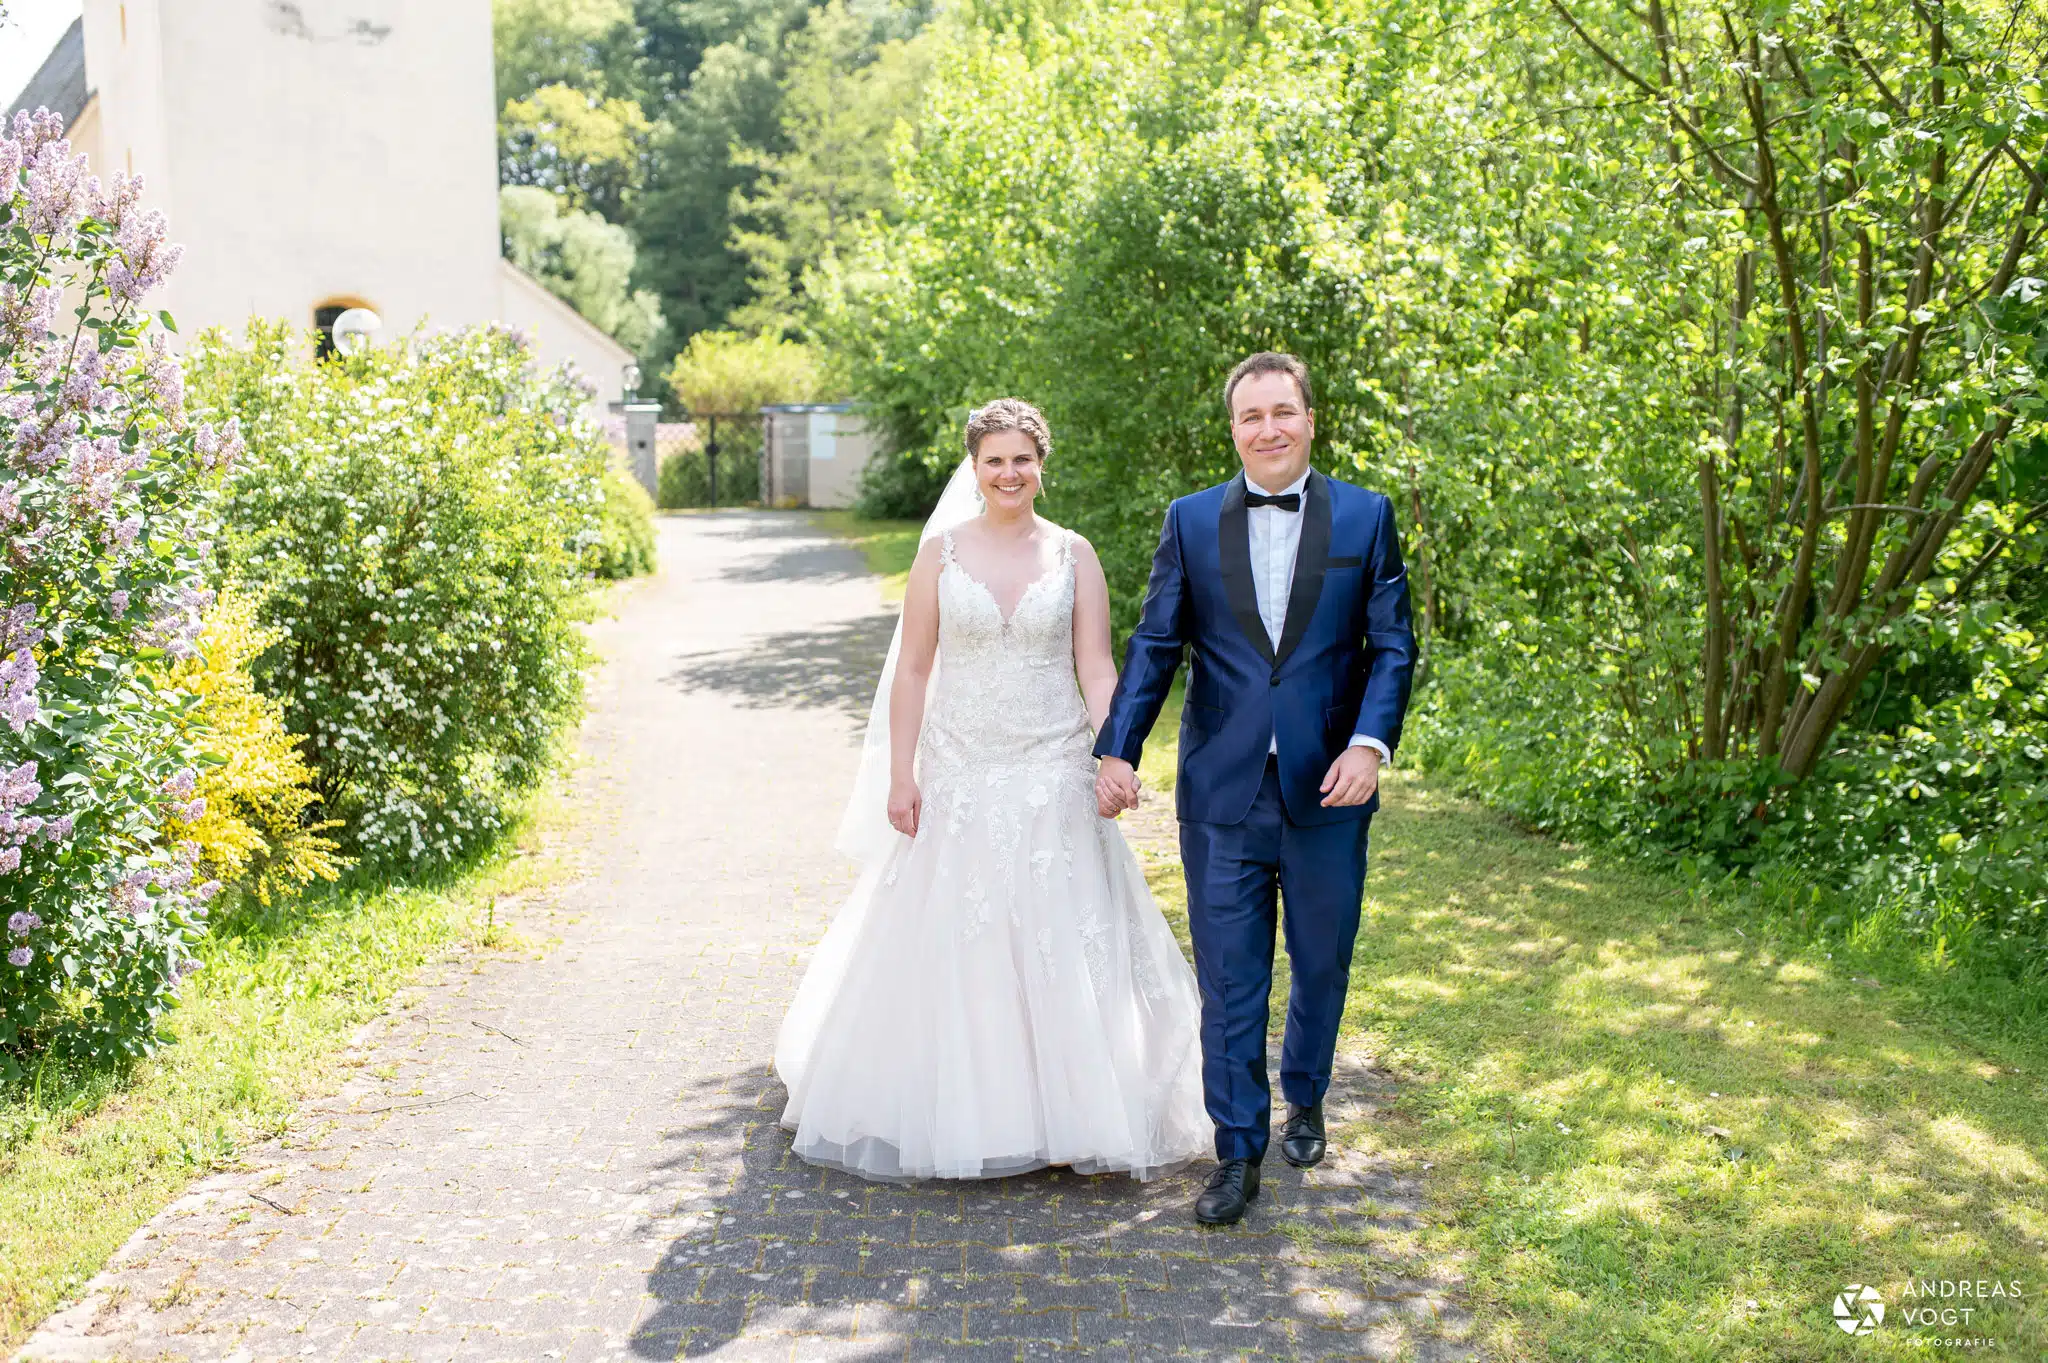 Marie und Gregor bei ihrem Brautpaarfotoshooting in Abtsgmünd - Fotograf Andreas Vogt